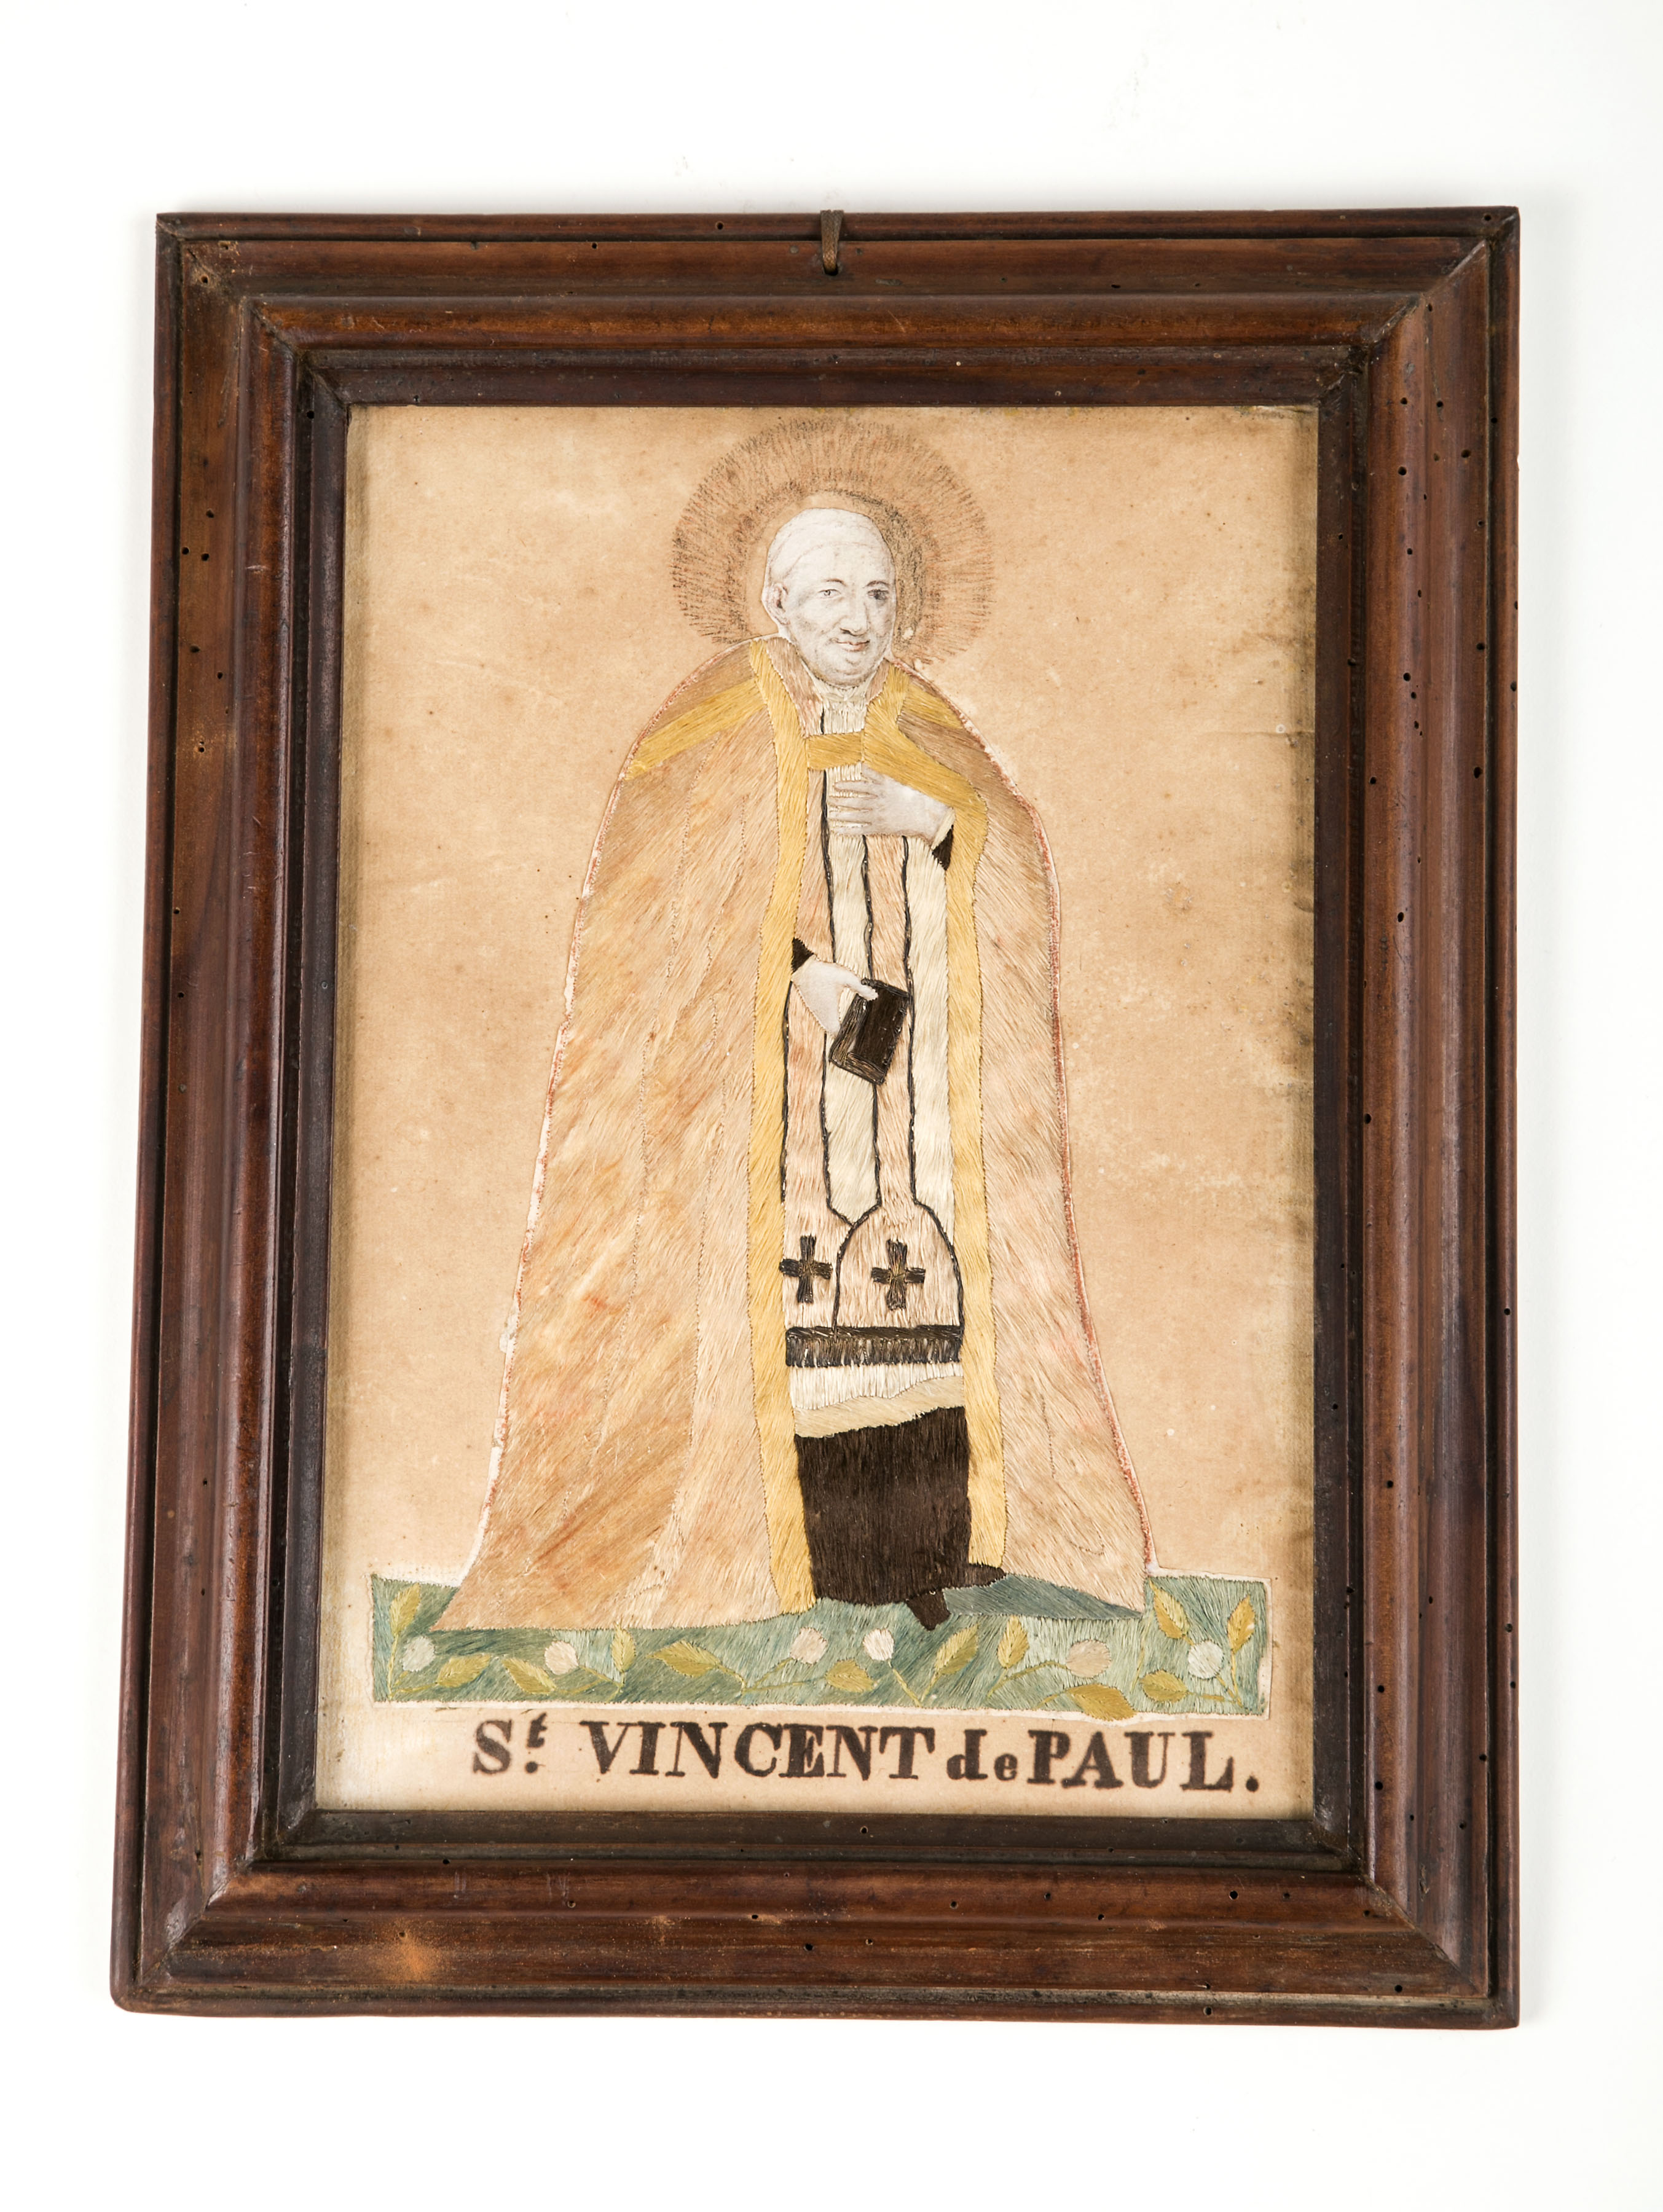 Embroidered portrait St. Vincent de Paul